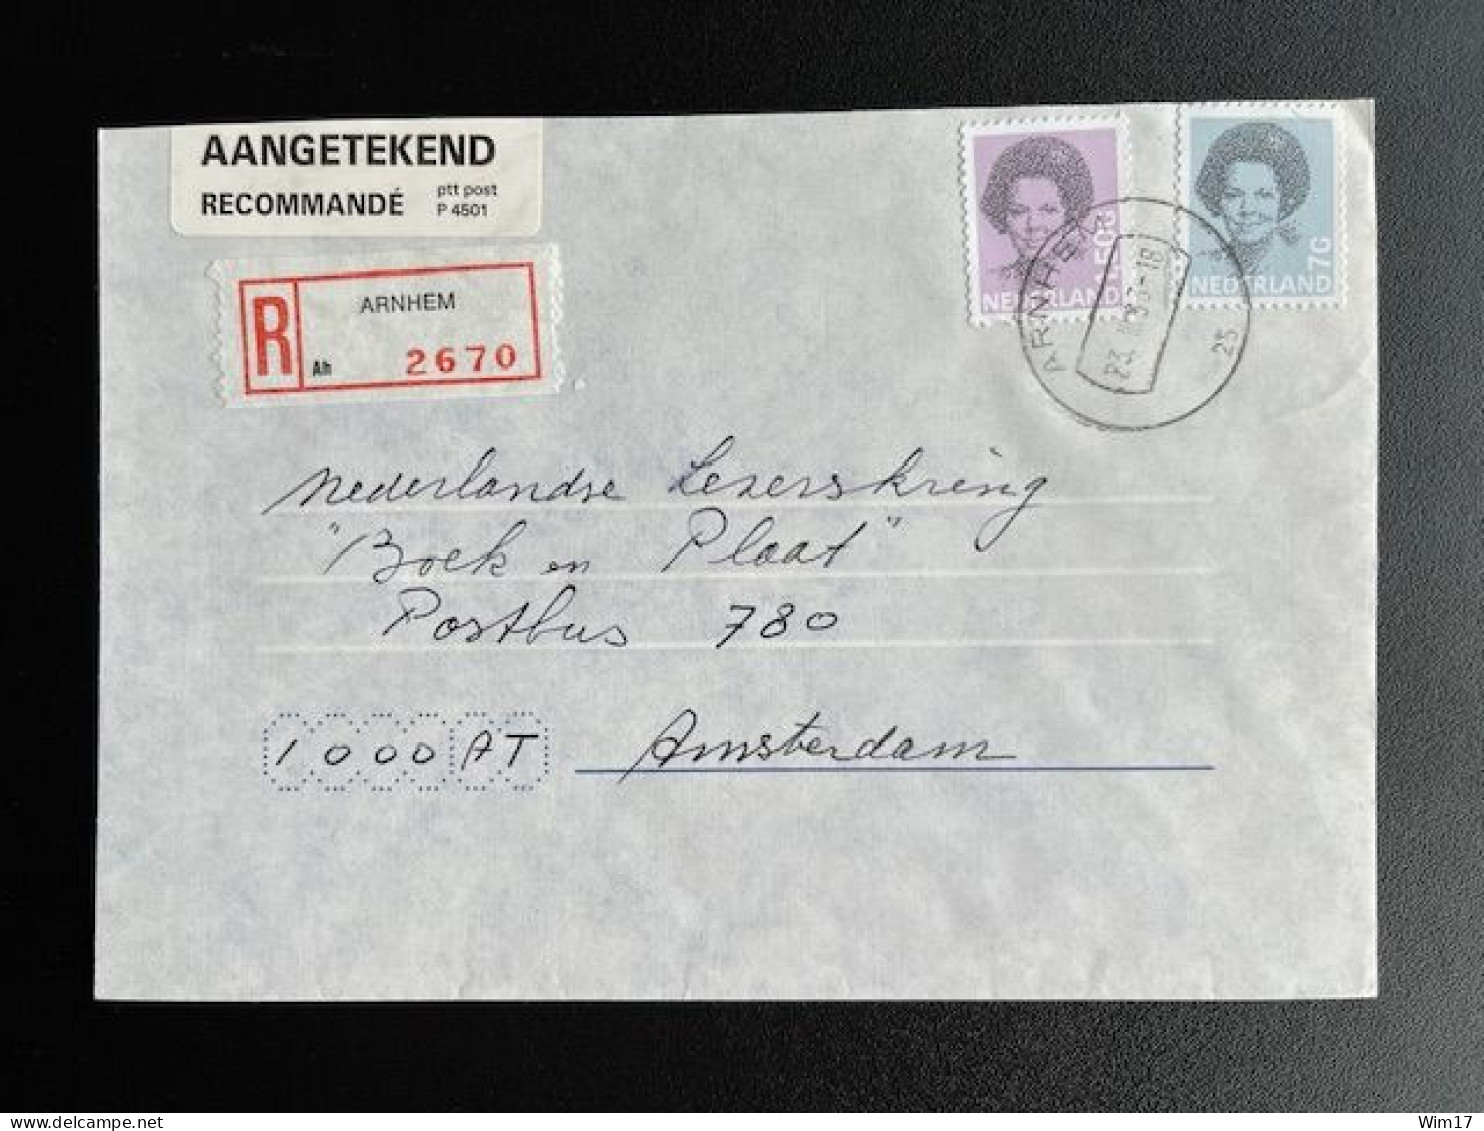 NETHERLANDS 1993 REGISTERED LETTER ARNHEM TO AMSTERDAM 23-03-1993 NEDERLAND AANGETEKEND - Covers & Documents